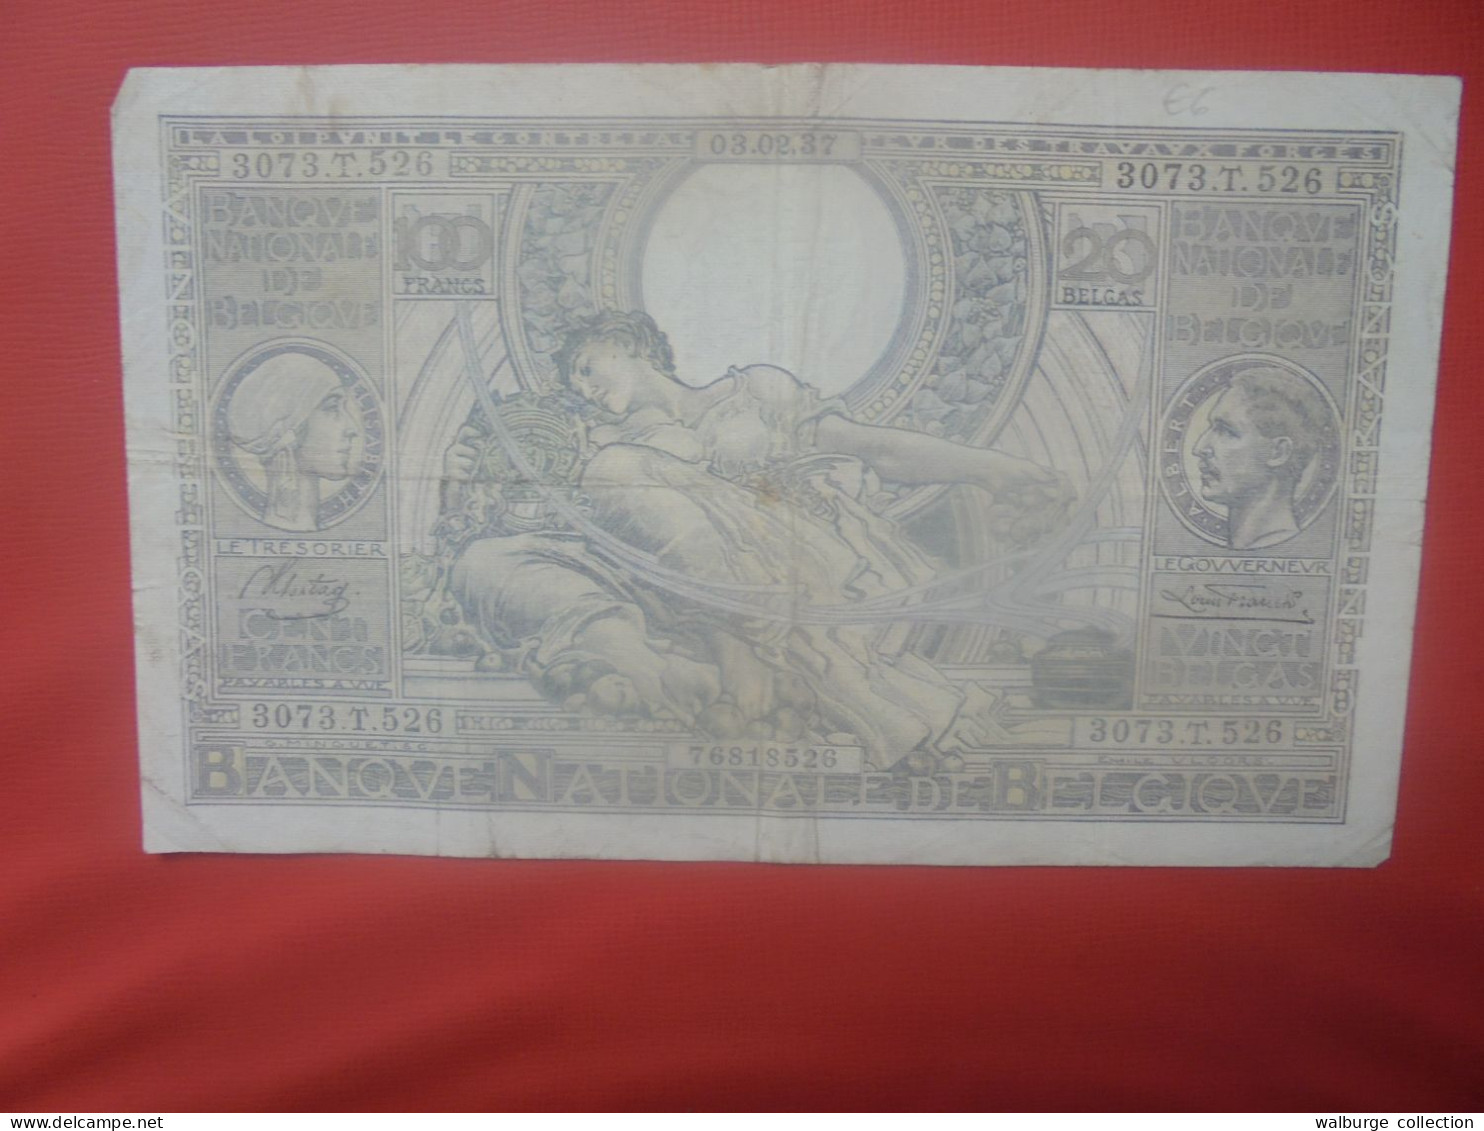 BELGIQUE 100 Francs 3-2-37 Circuler (B.18) - 100 Francs & 100 Francs-20 Belgas